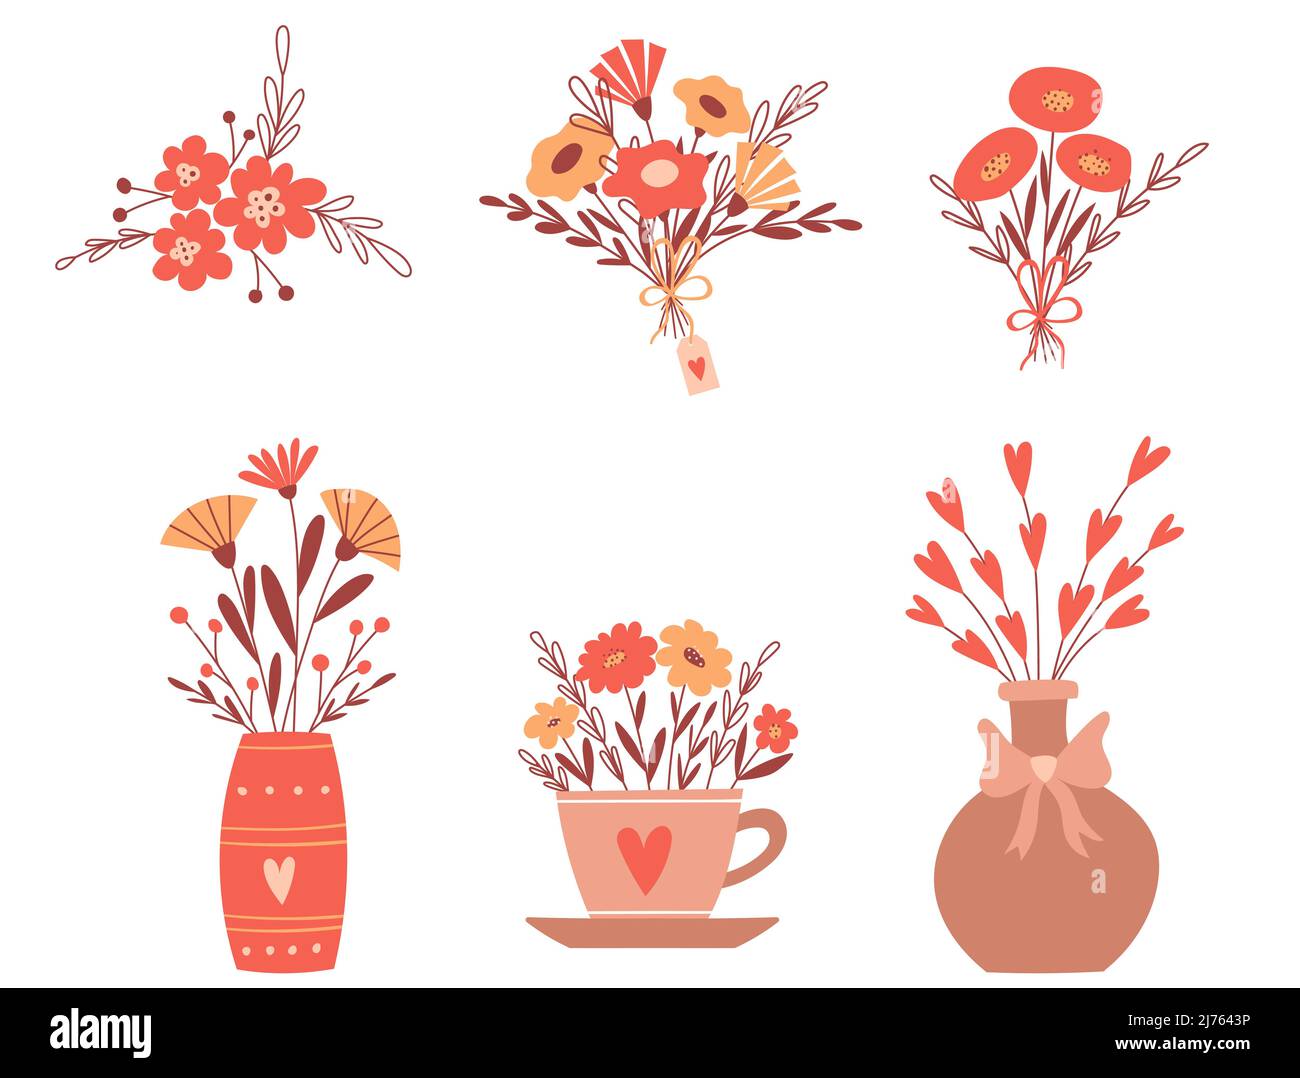 Una serie di composizioni floreali, mazzi in vaso, una tazza, con un arco. Carino semplici composizioni botaniche in stile cartoon. Illustrazioni vettoriali a colori i Illustrazione Vettoriale